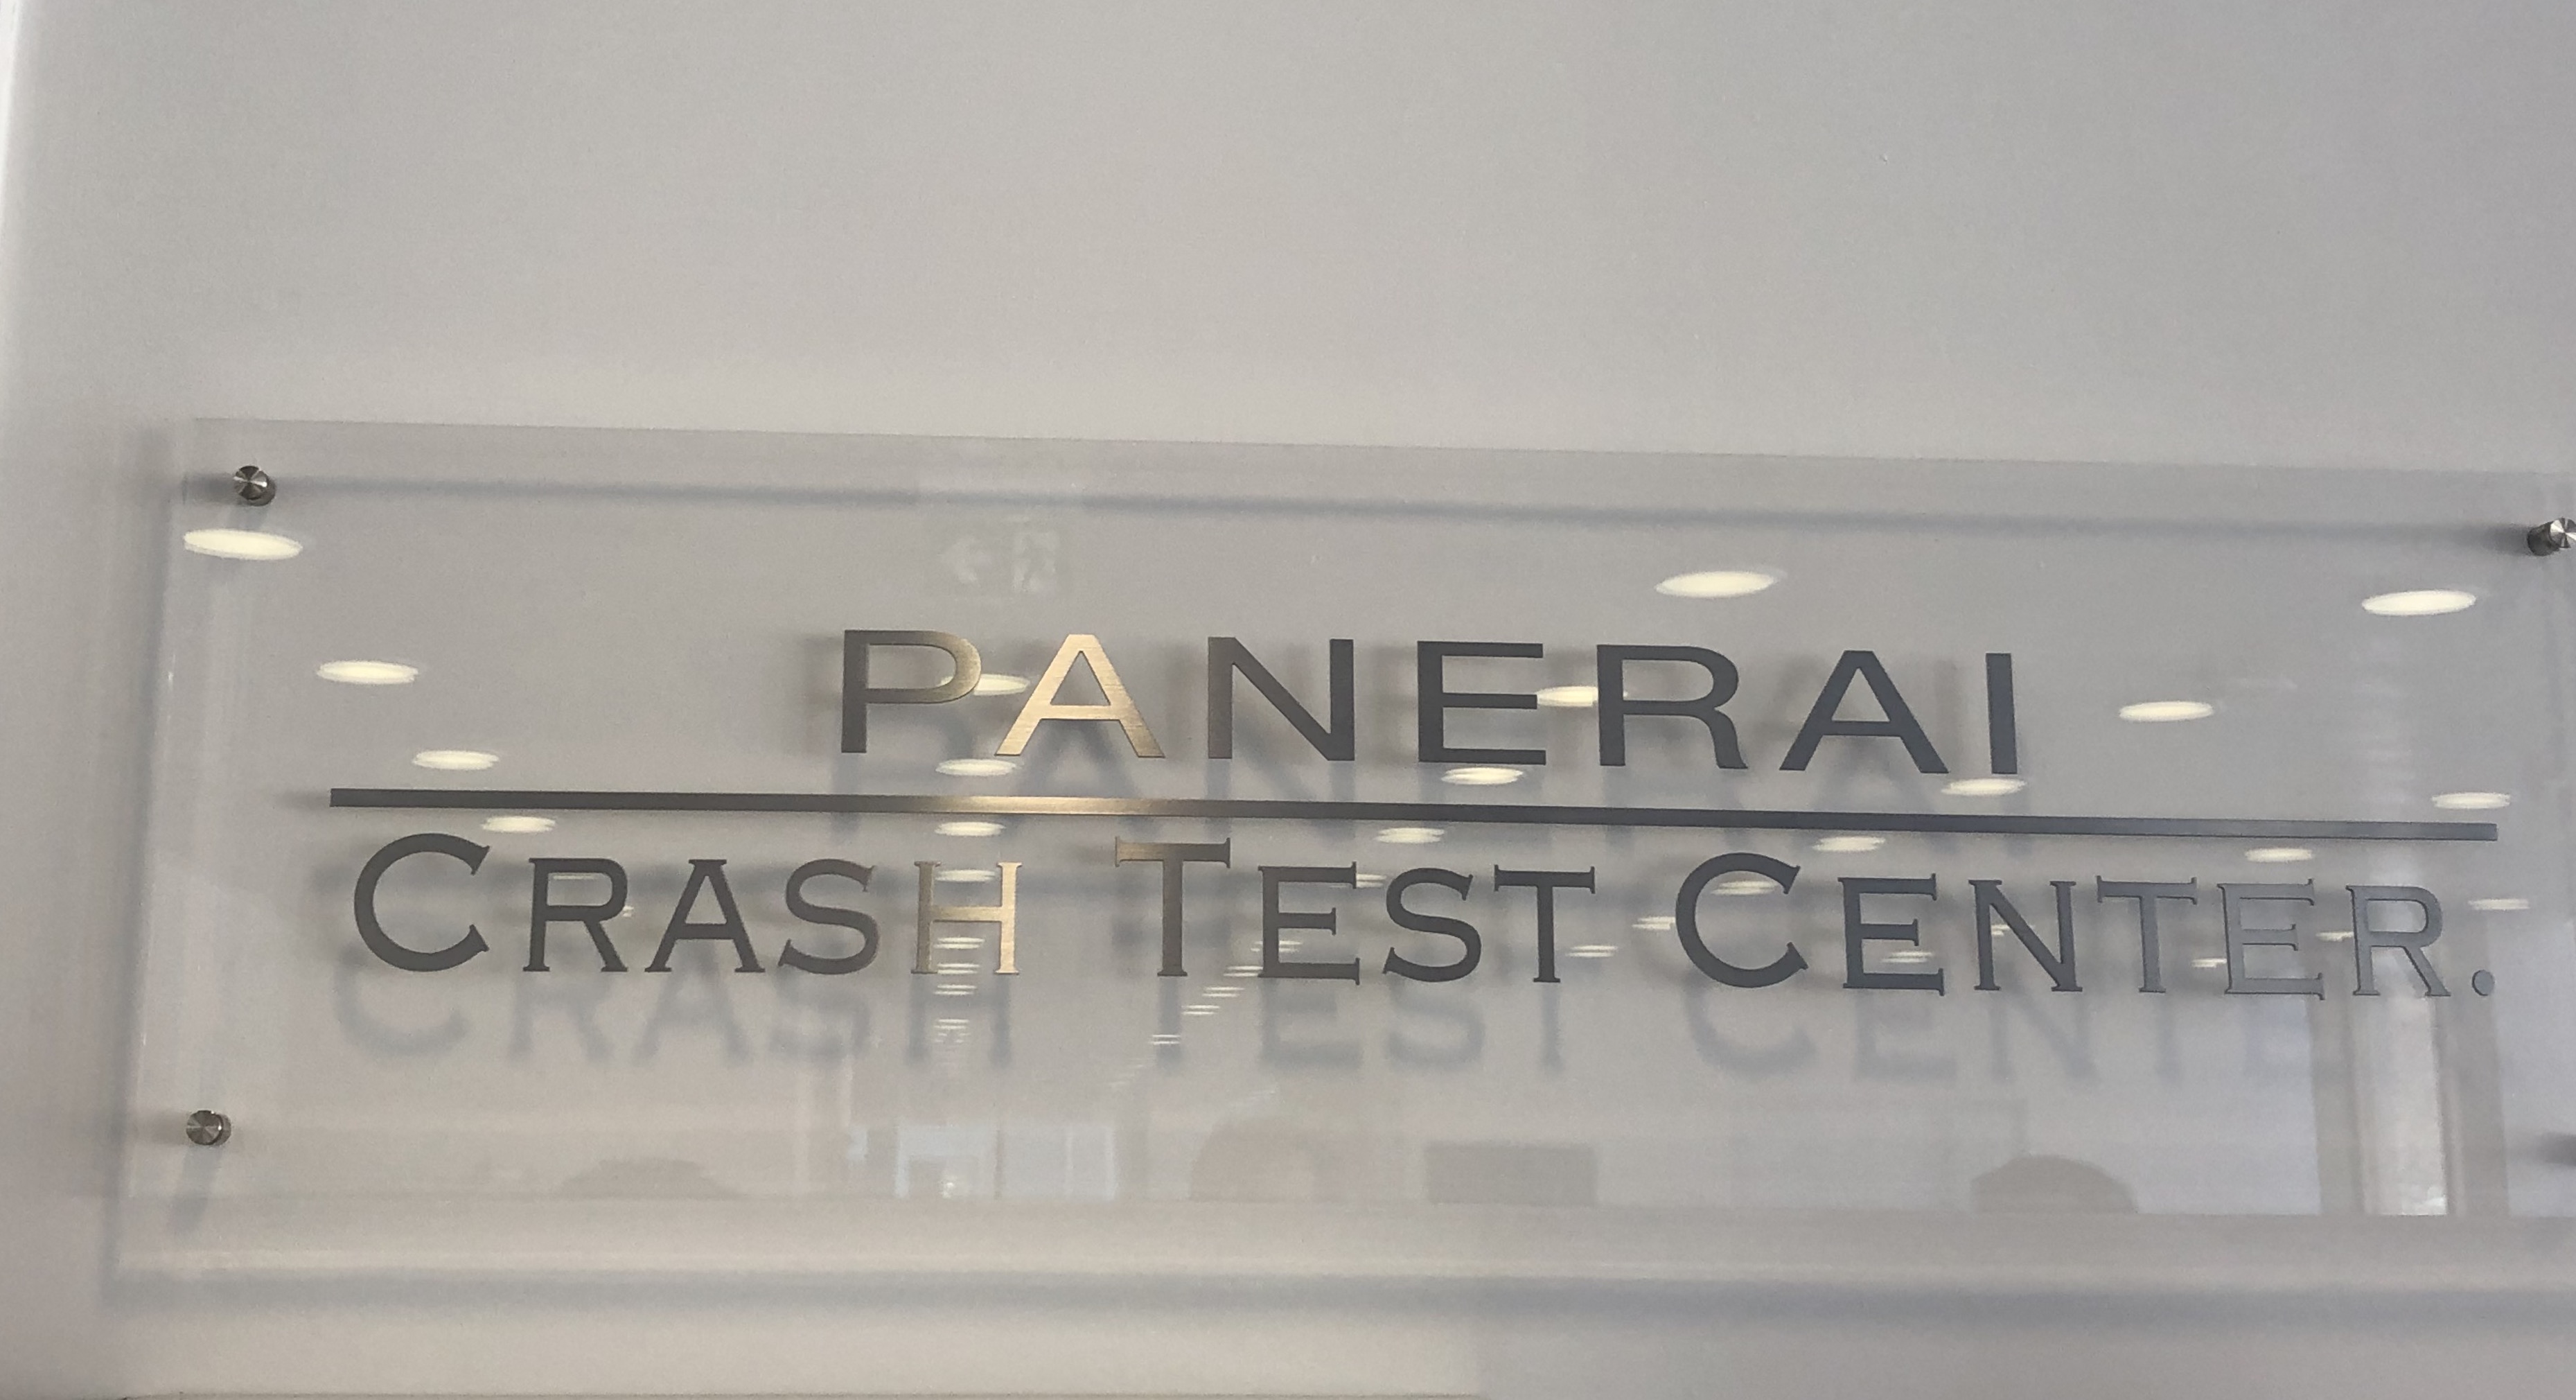 Panerai crash test center 